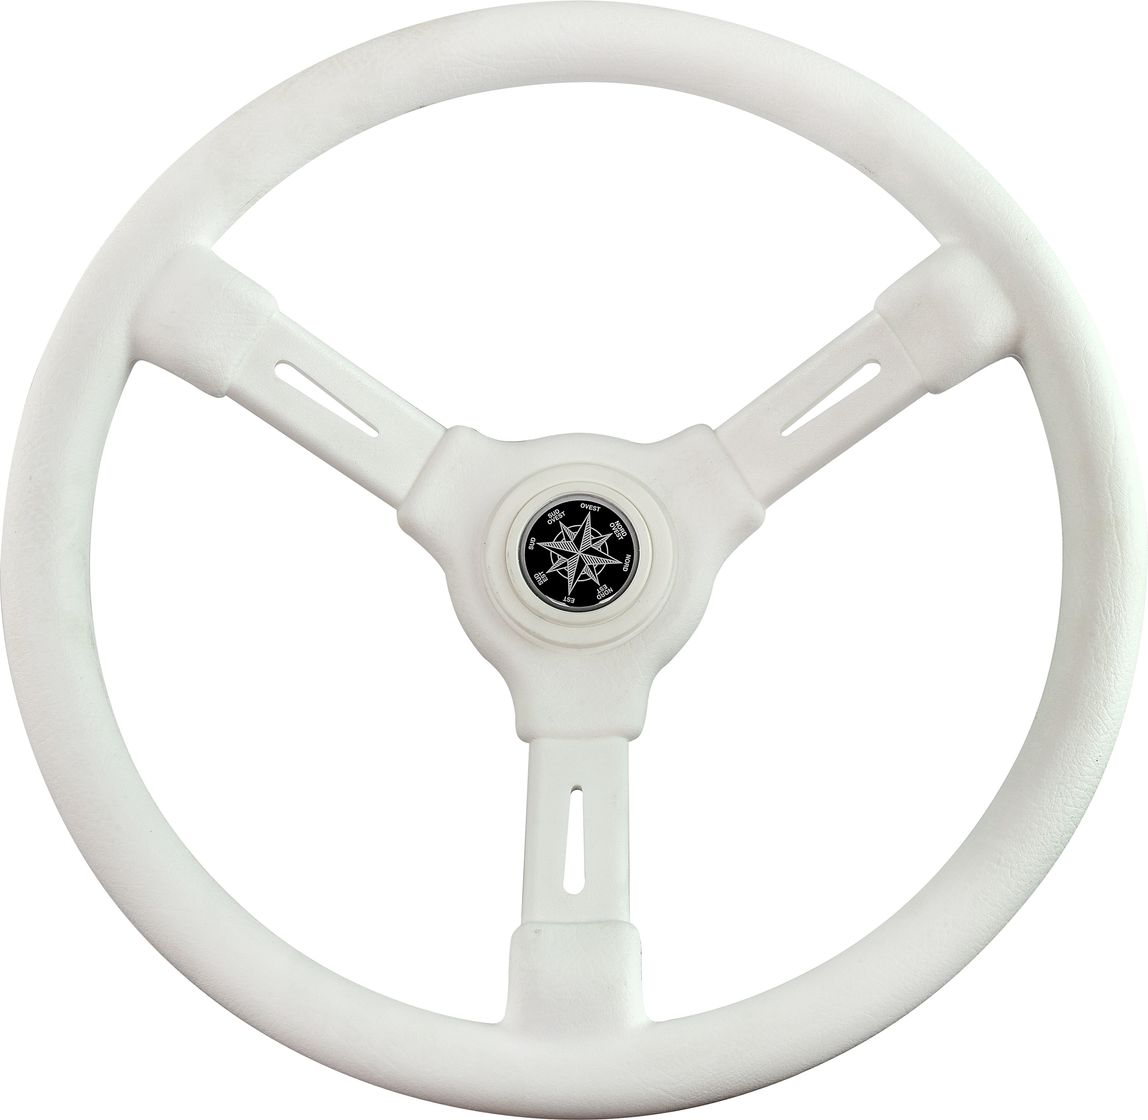 Рулевое колесо RIVIERA белый обод и спицы д. 350 мм VN8001-08 рулевое колесо e chance обод и спицы черные д 330 мм d33 ec